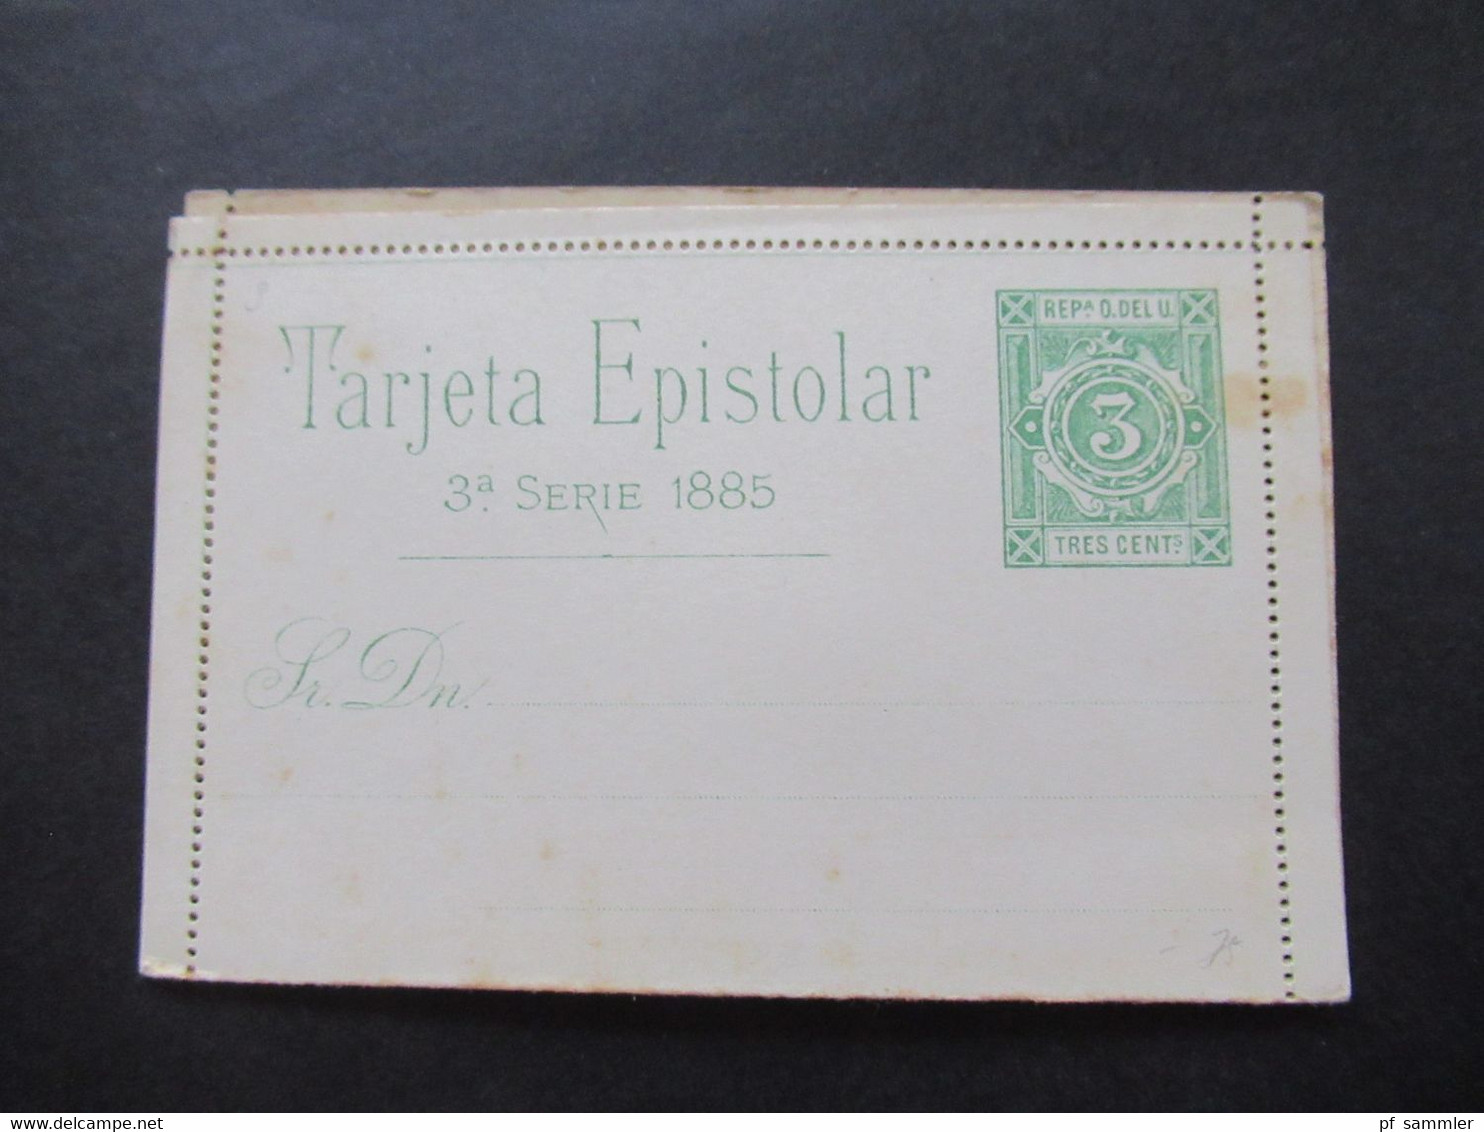 GA Posten ungebraucht Südamerika um 1890 Karten / Umschläge / Doppelkarten Uruguay, Venezuela, Salvador, Nicaragua